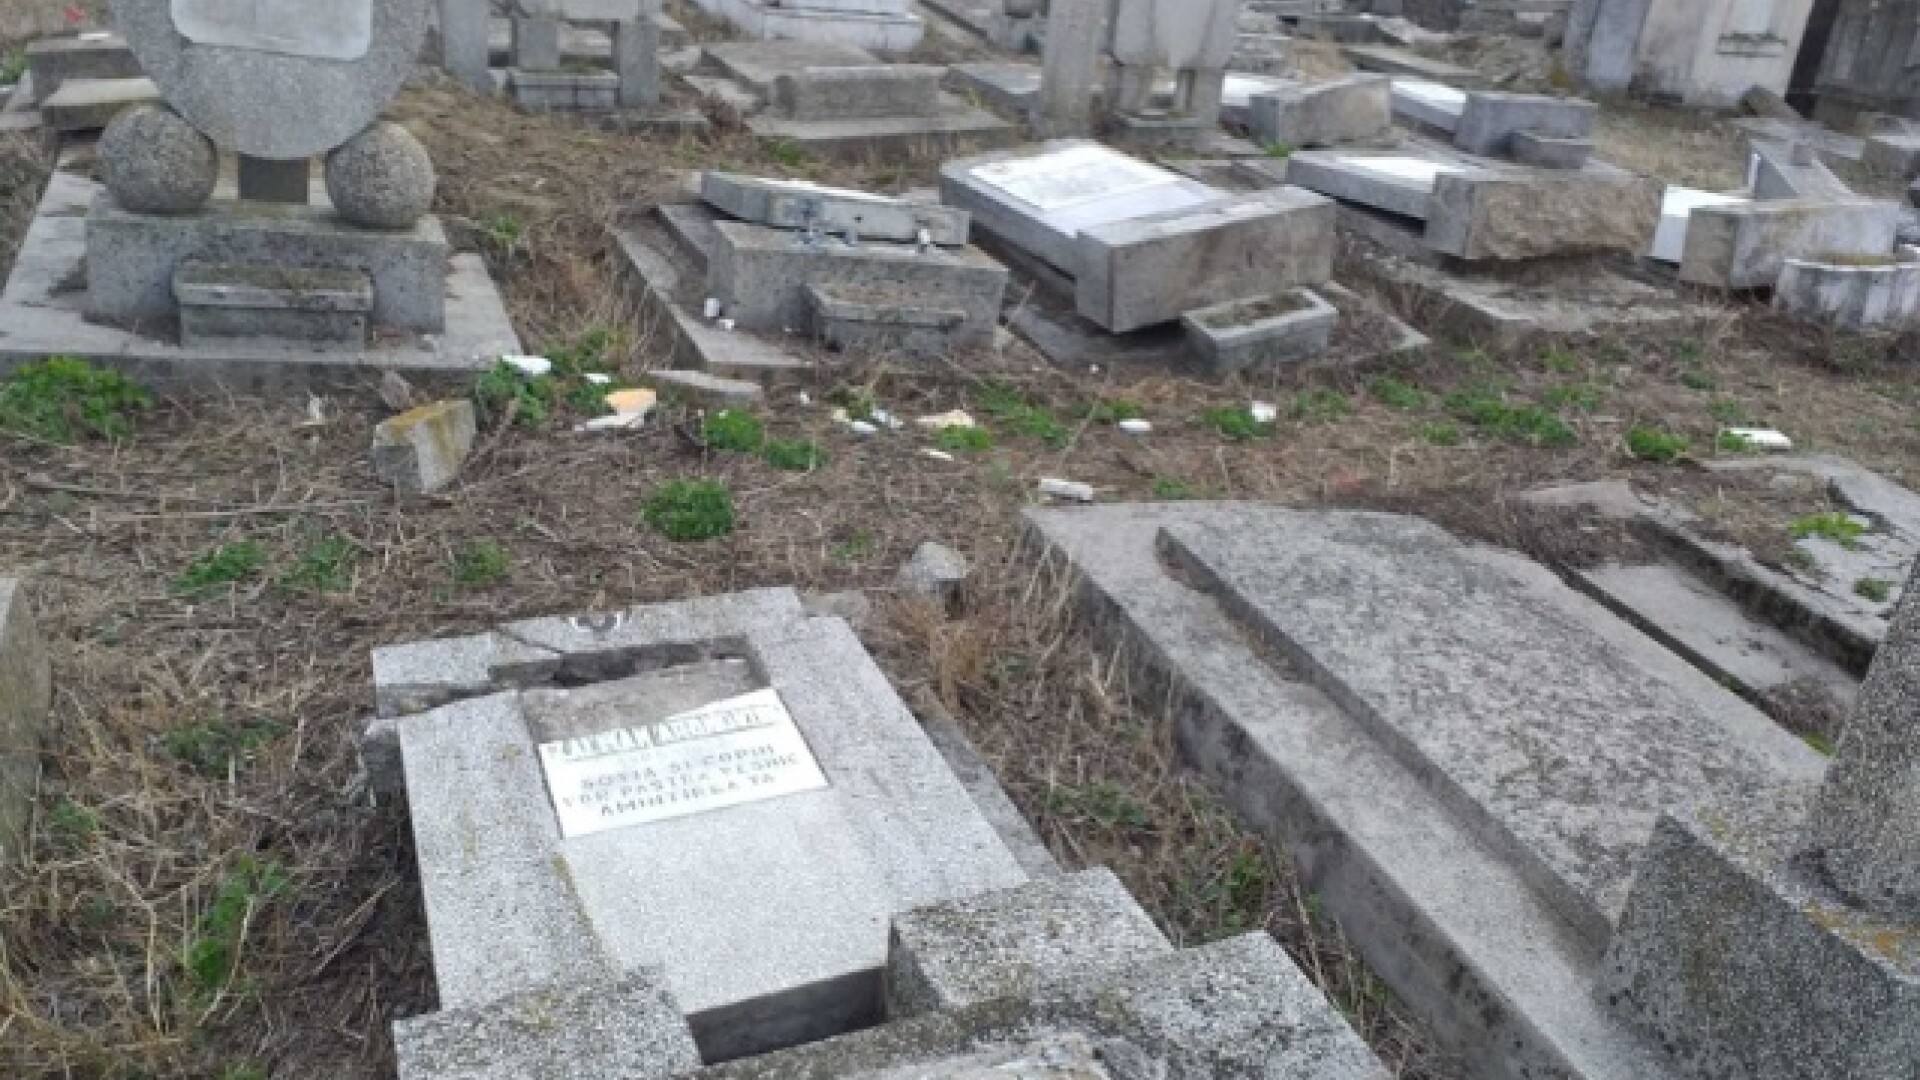 Zeci de morminte funerare dintr-un cimitir evreiesc au fost vandalizate